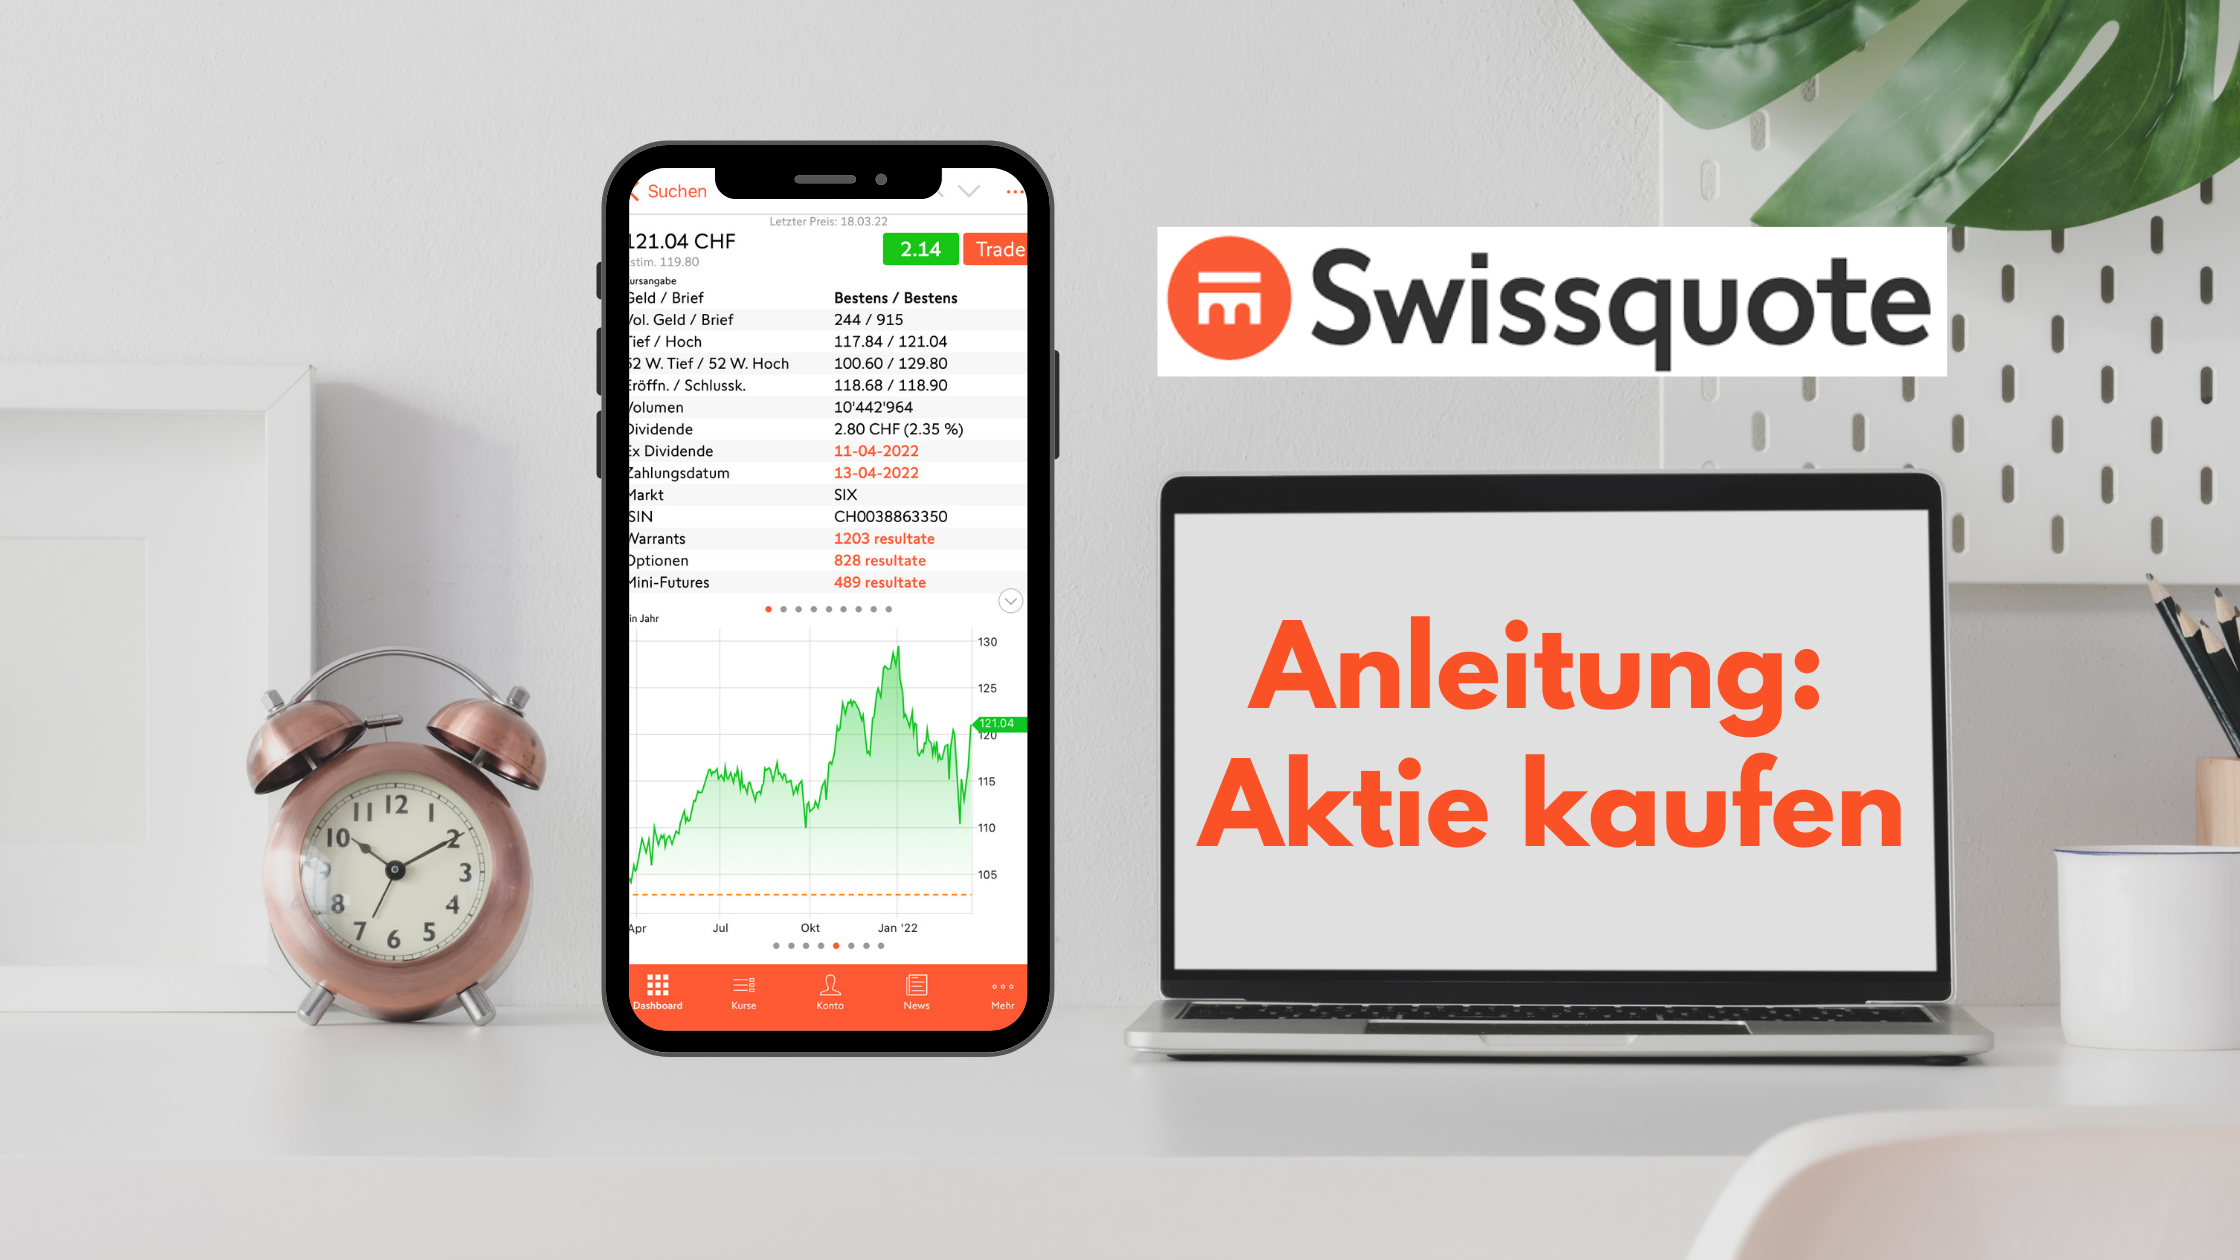 Swissquote Aktie kaufen